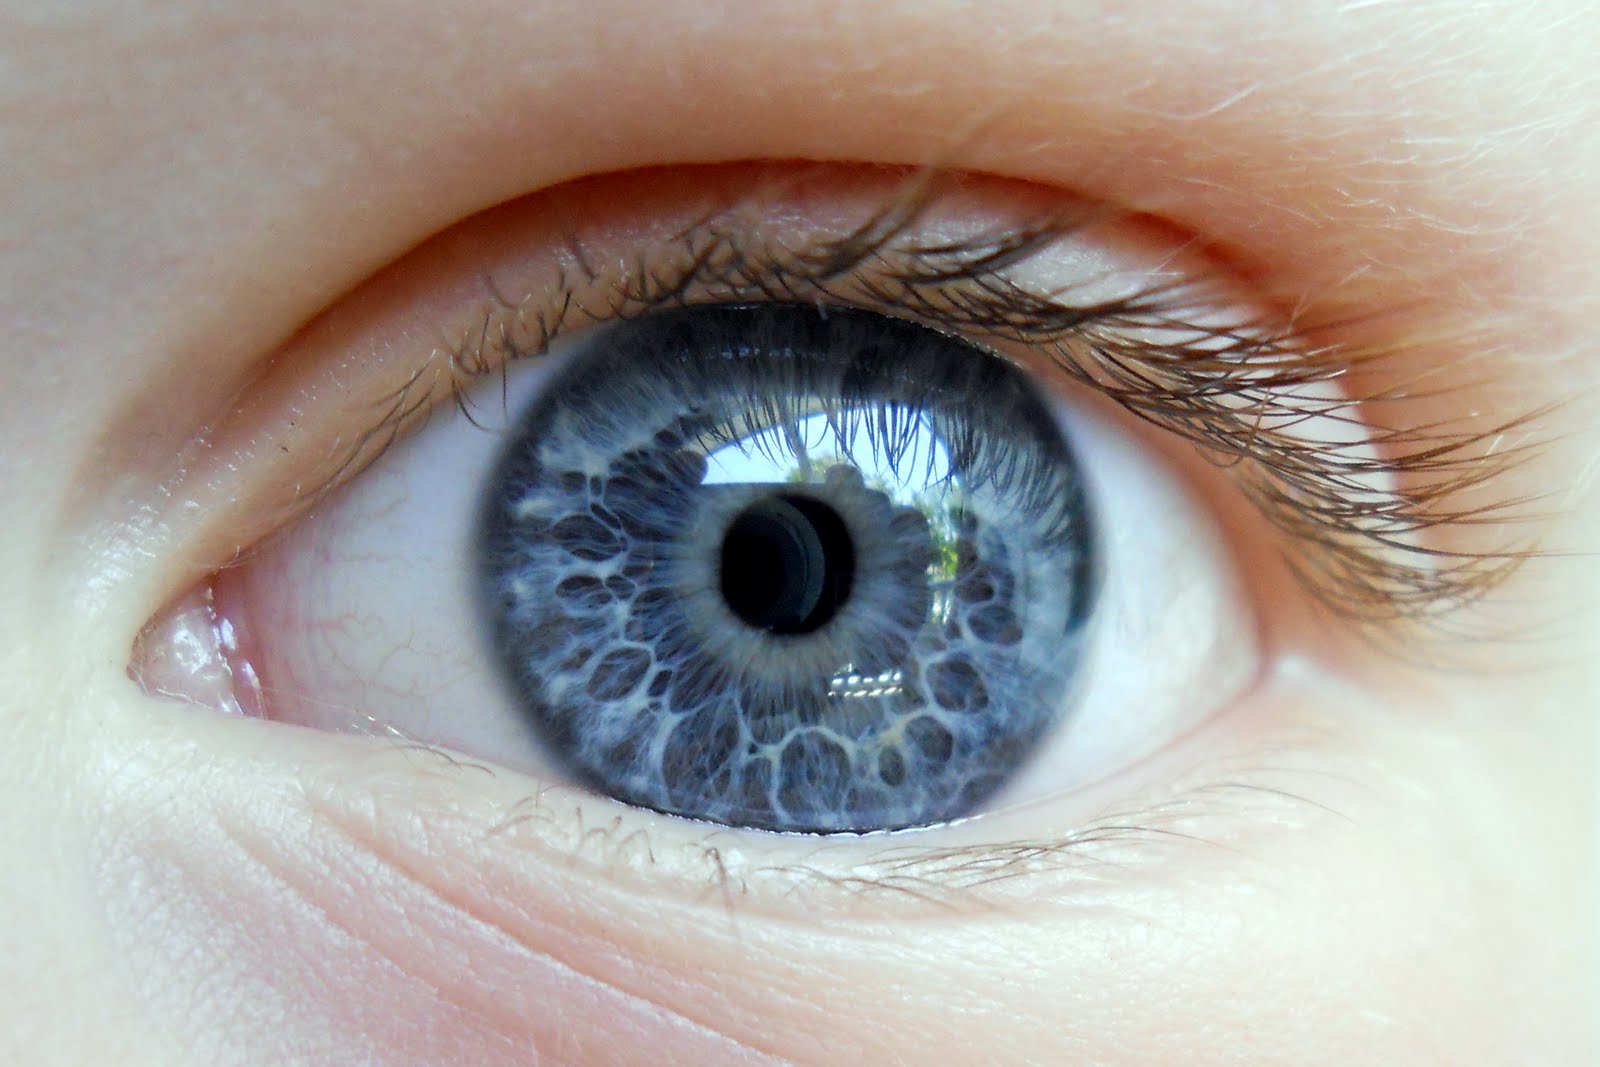 Egészséges szem esetén használható-e színes kontaktlencse?